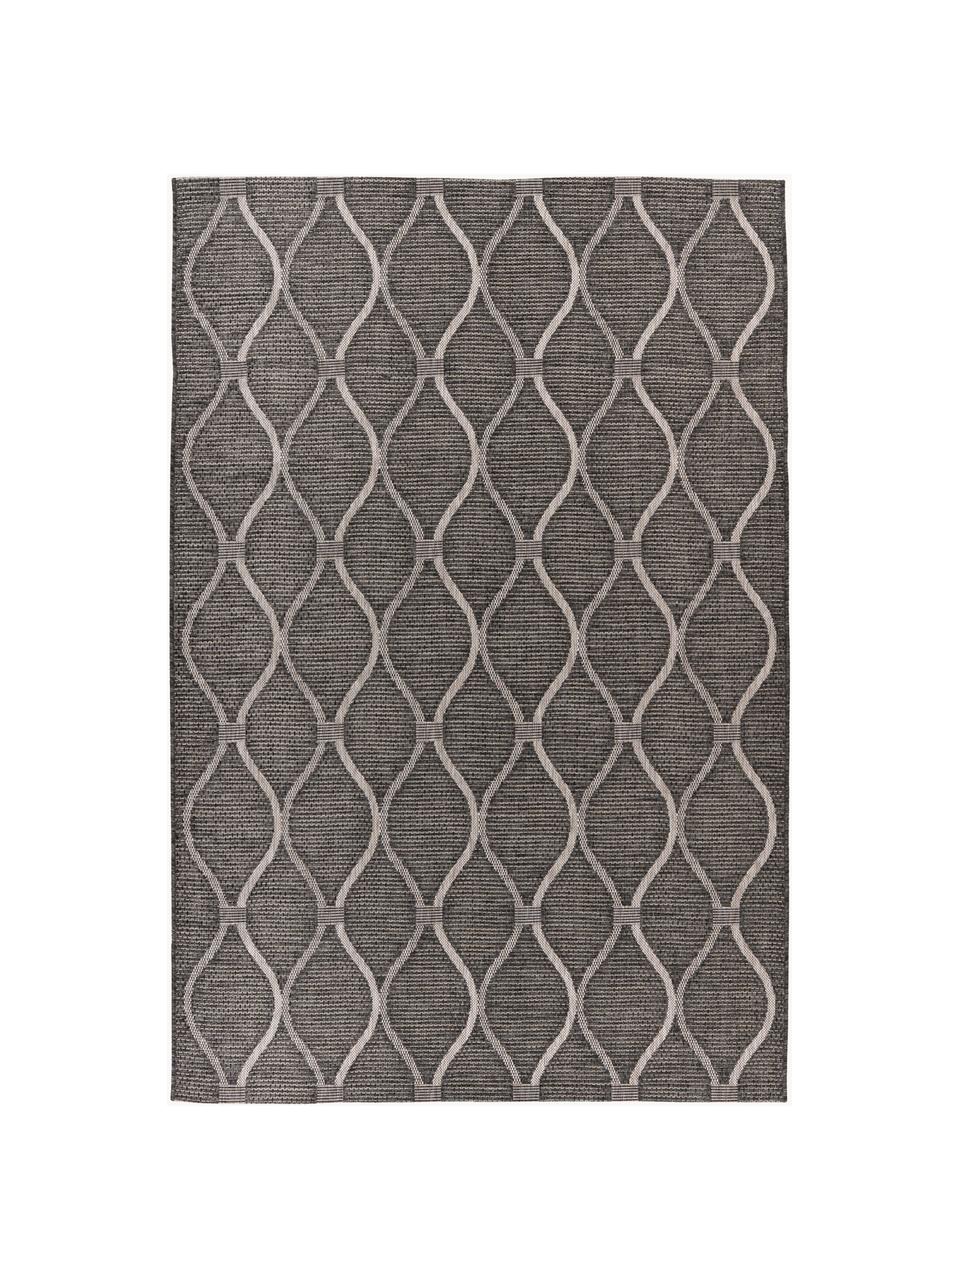 Interiérový a exterirérový koberec s grafickým vzorem Muster, 100 % polypropylen, Taupe, tlumeně bílá, Š 80 cm, D 150 cm (velikost XS)